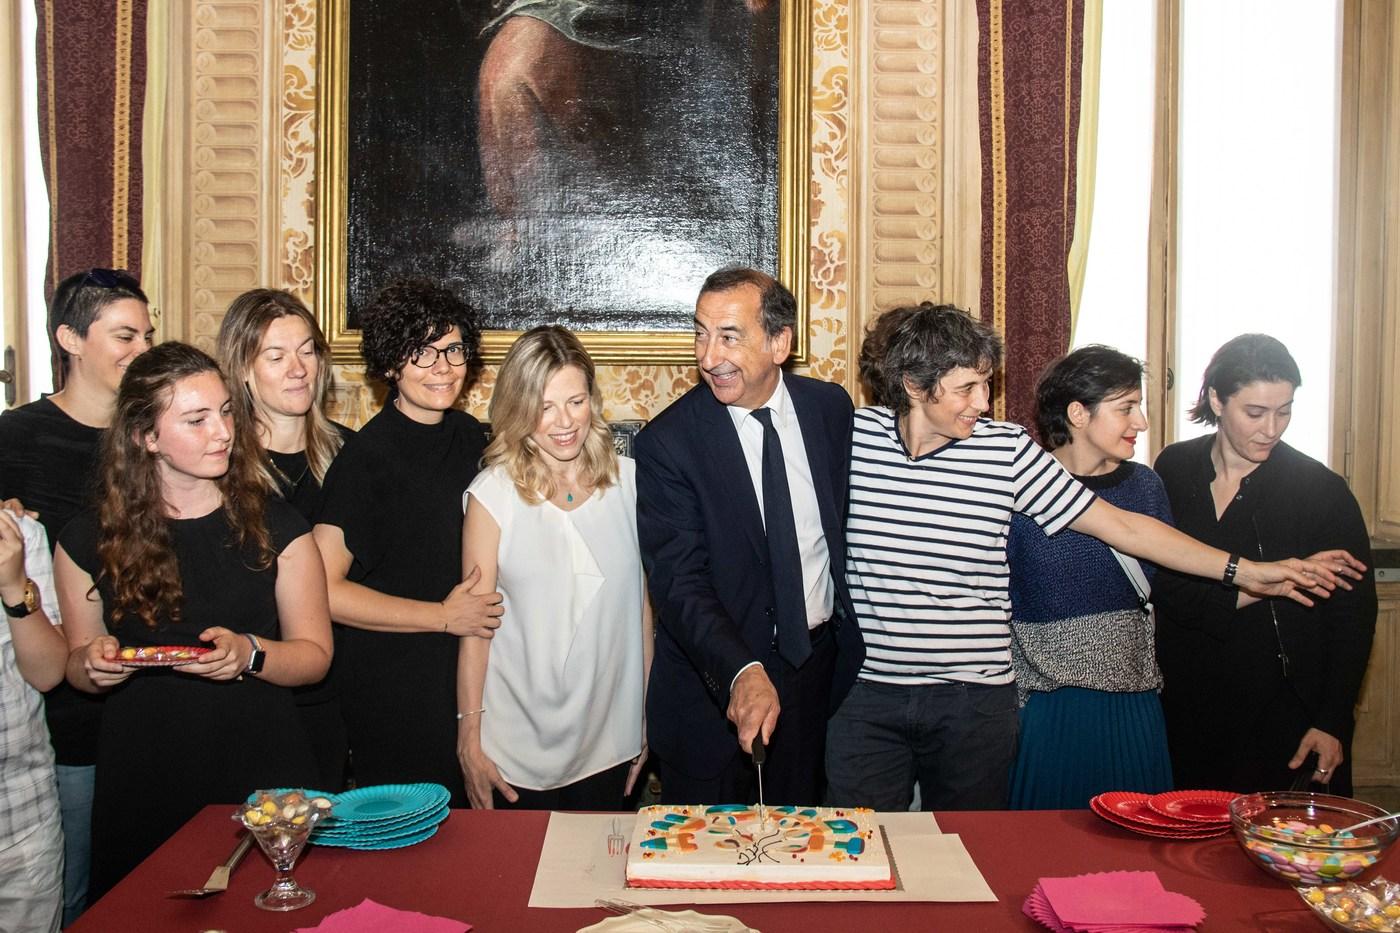 Milano, il sindaco Sala riconosce nove figli delle 